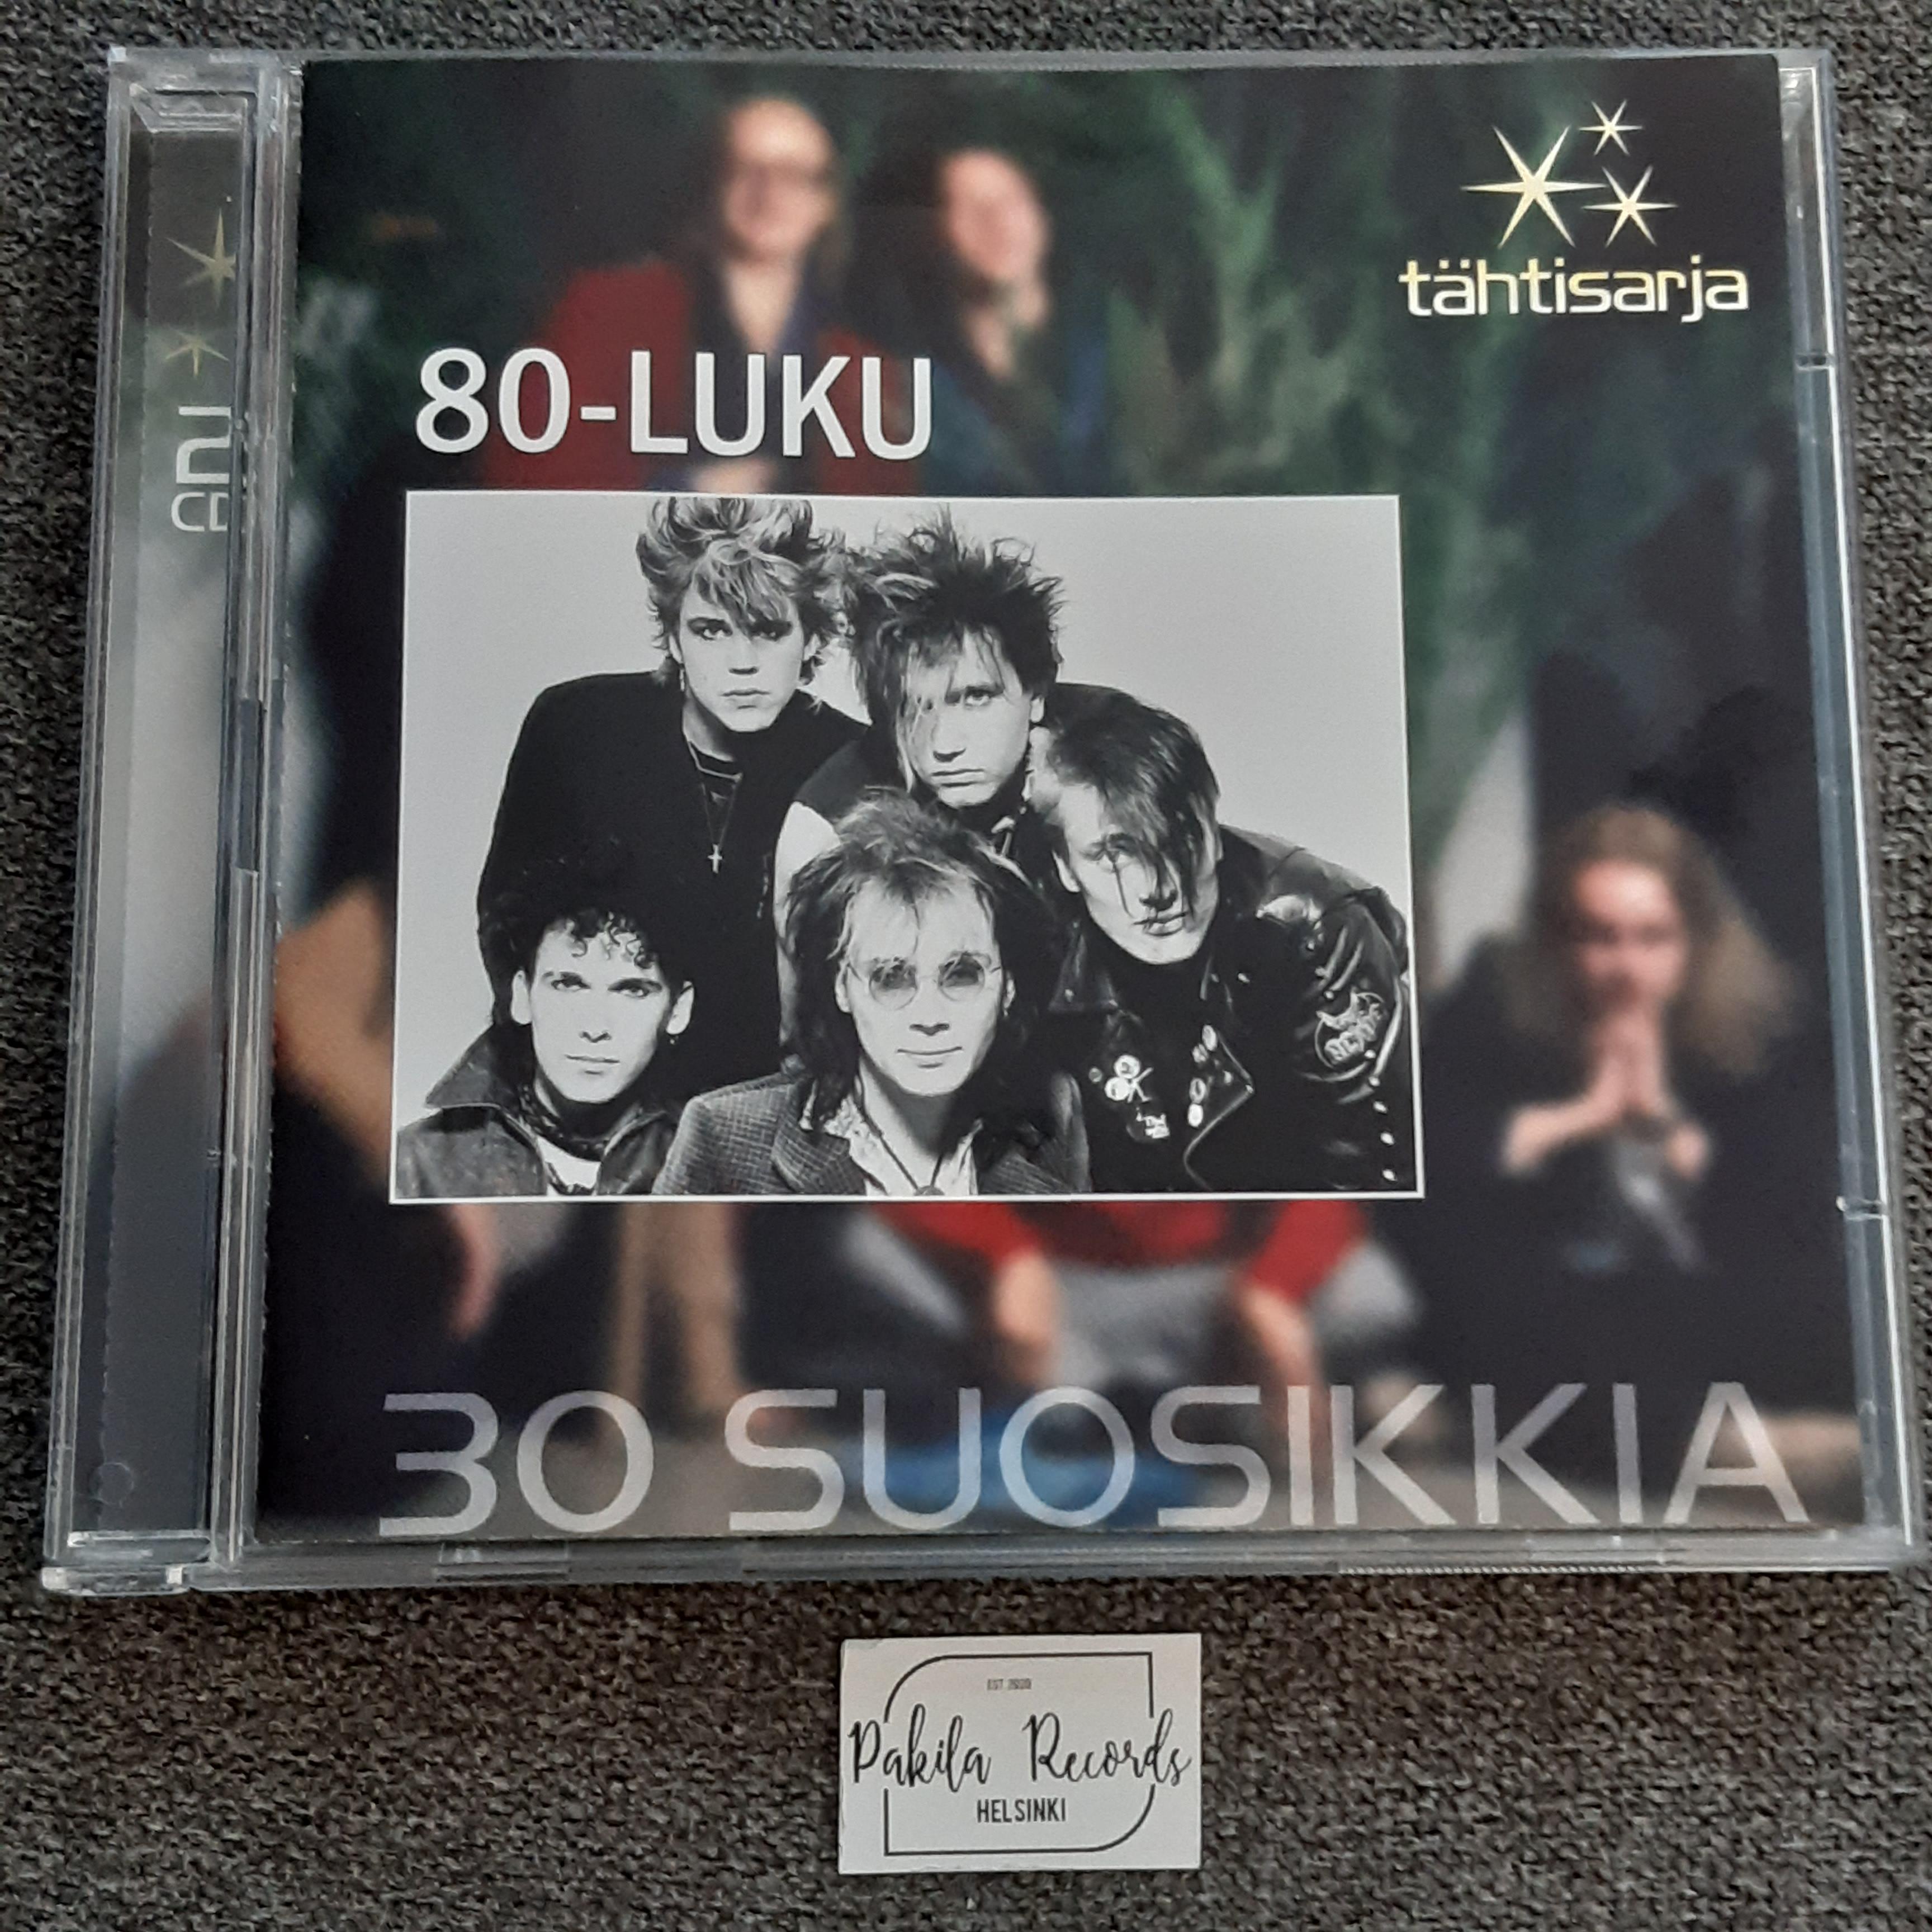 80-Luku - 30 suosikkia - 2 CD (käytetty)